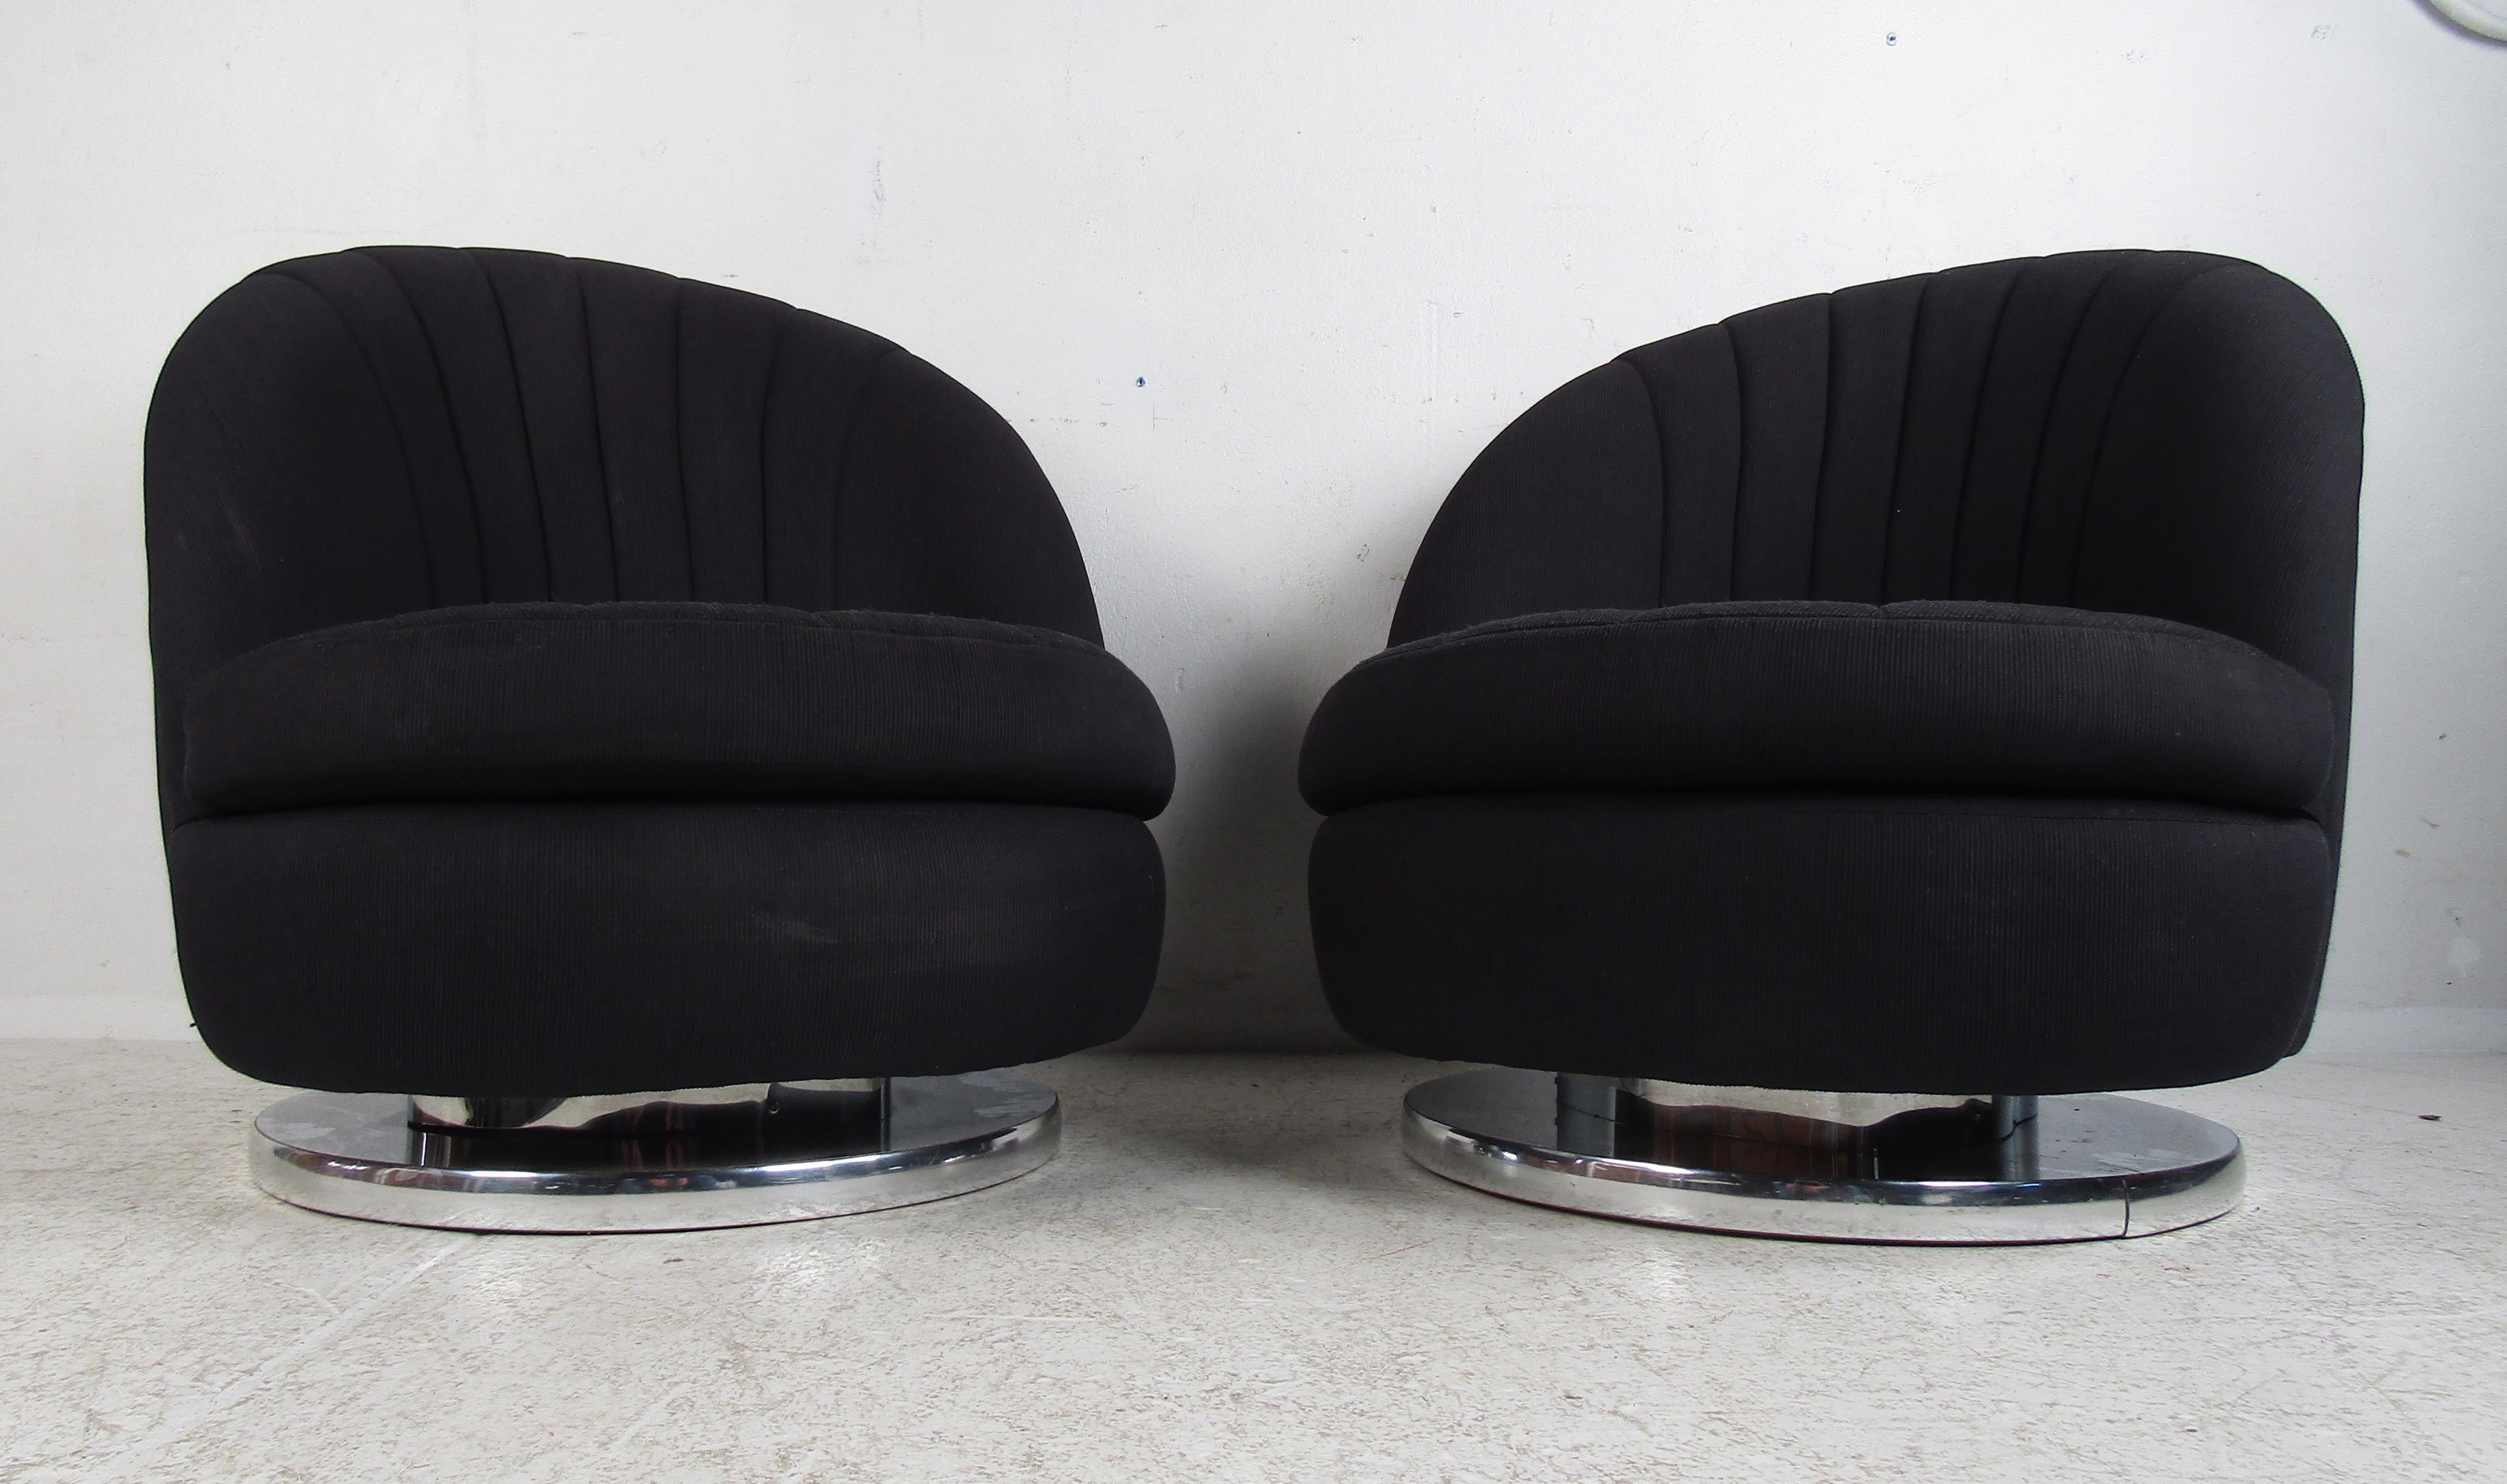 Cette superbe paire de chaises longues vintage et moderne flotte au sommet d'une base circulaire pivotante garnie de chrome. Le dossier en coquille et les coussins d'assise amovibles présentent des contours parfaits pour un confort maximal. Cette